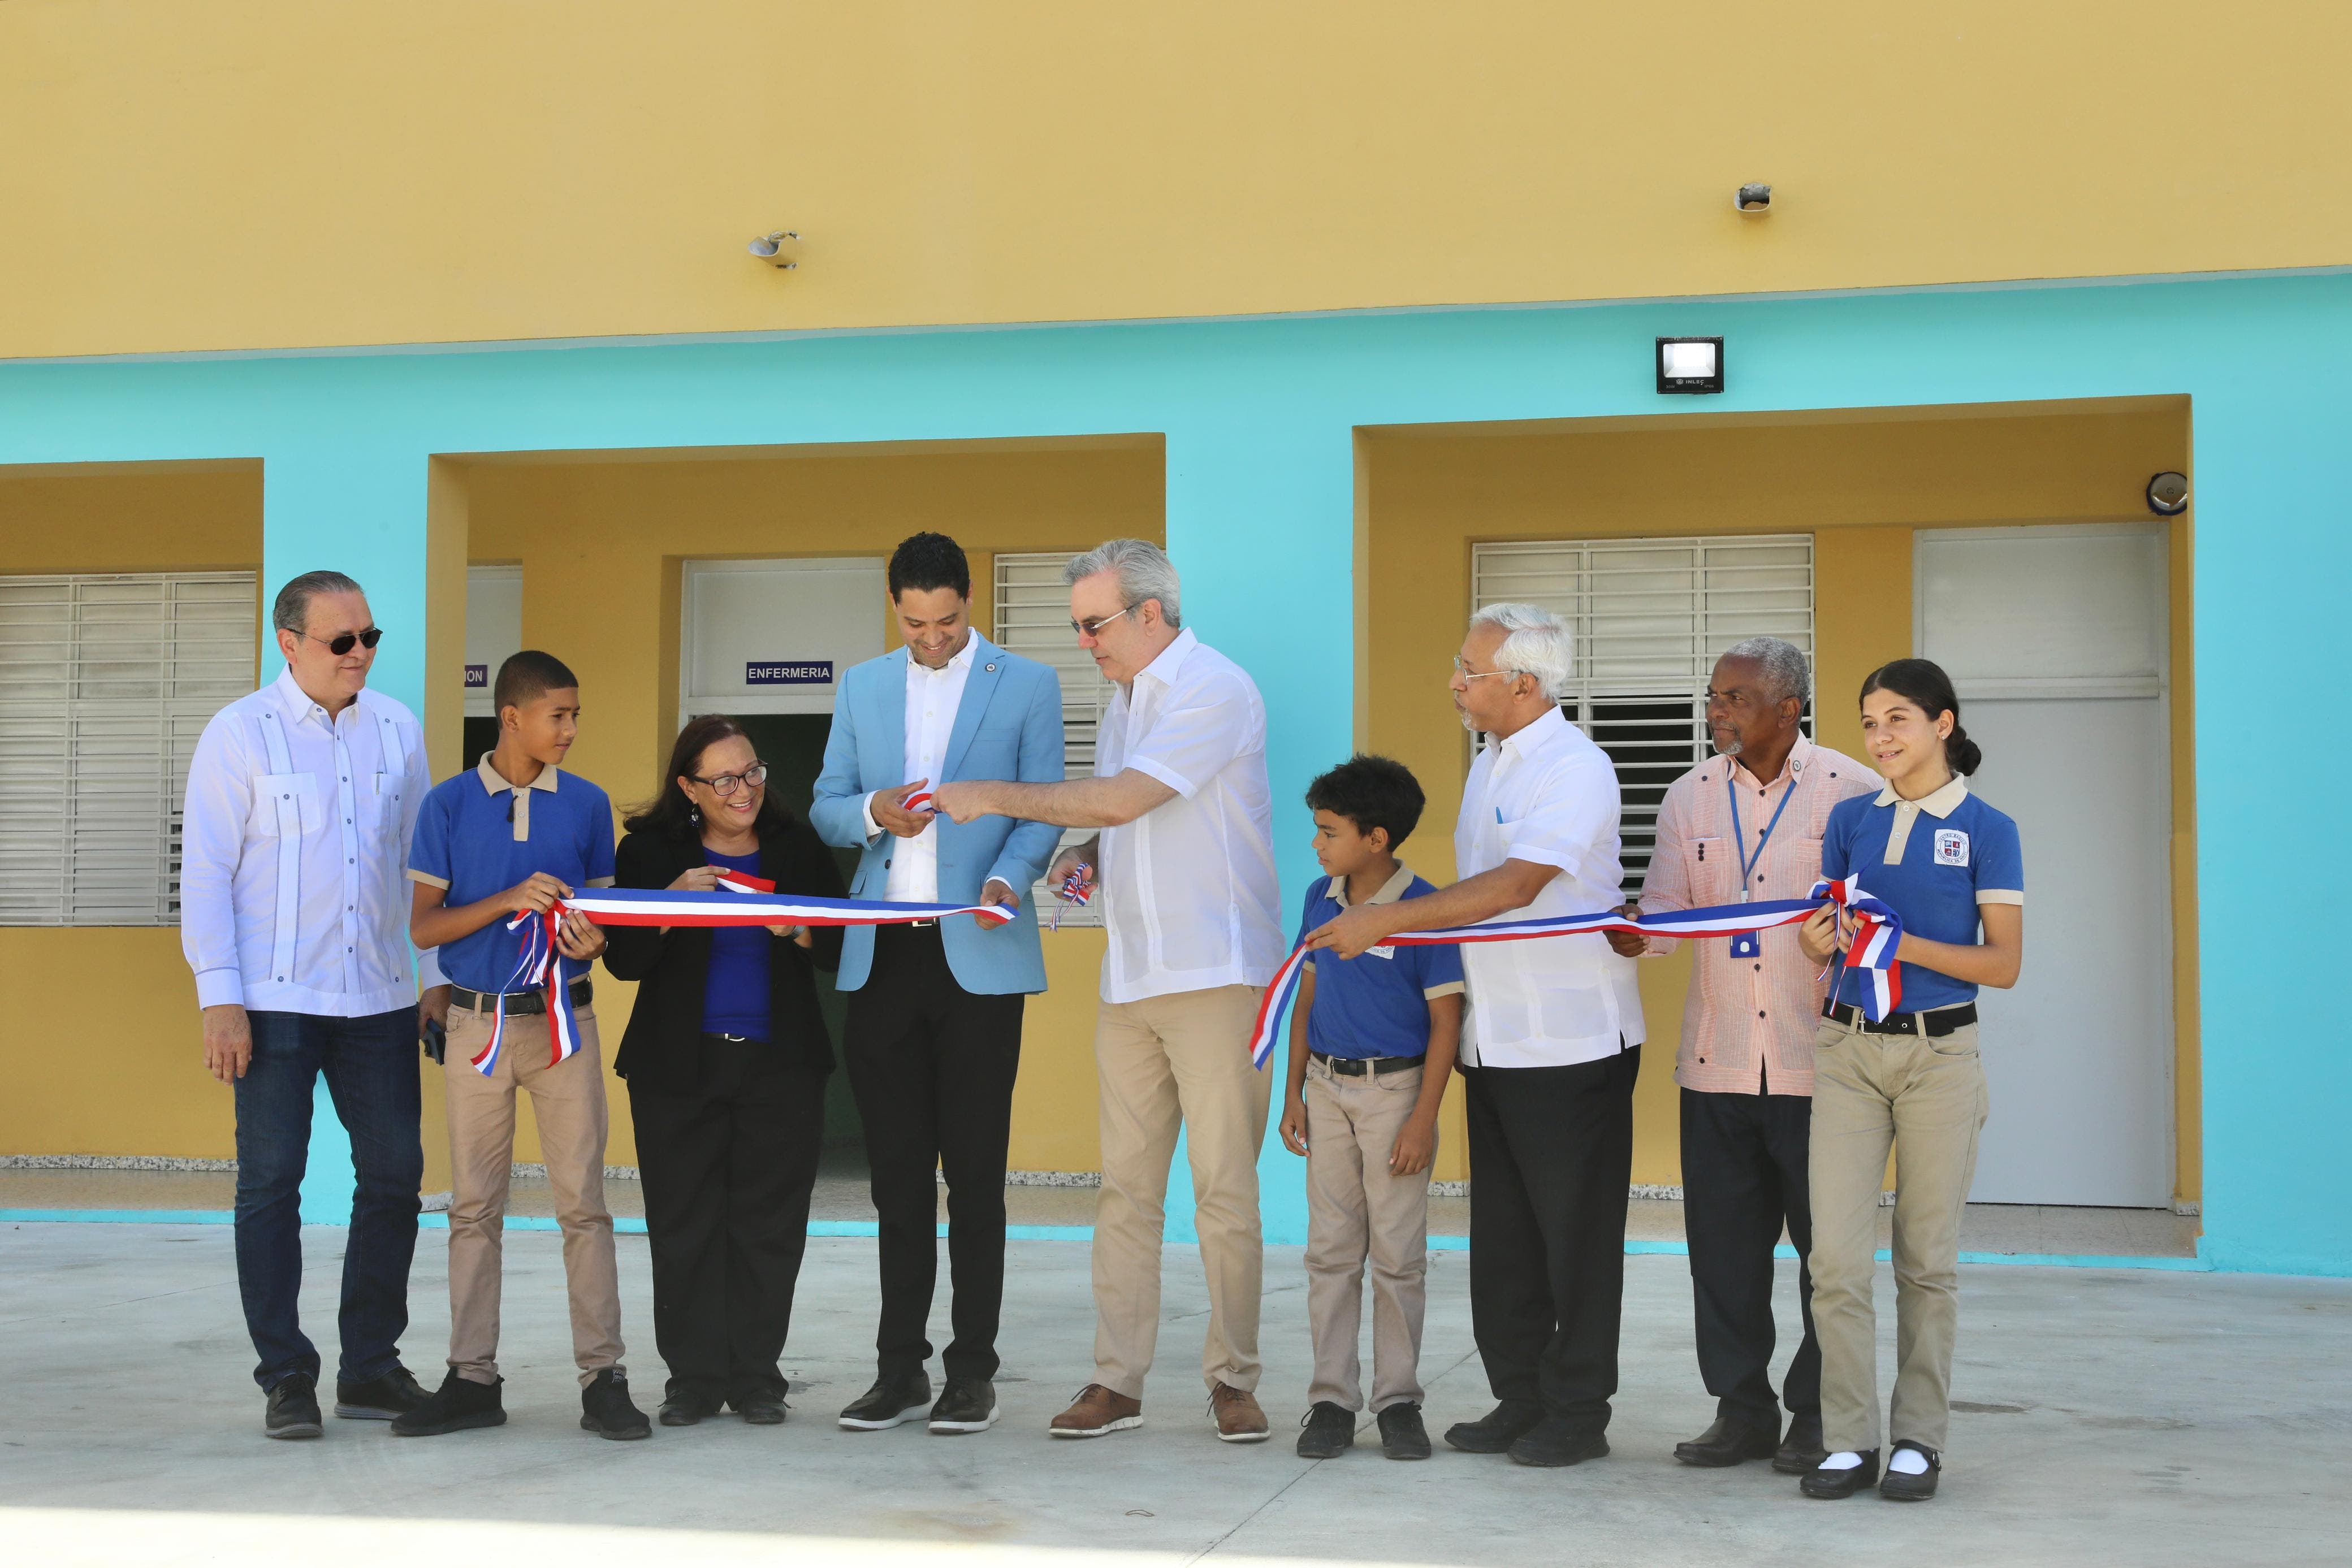 Presidente Abinader inaugura Escuela Mercedes Sepúlveda en el Ensanche Luperón